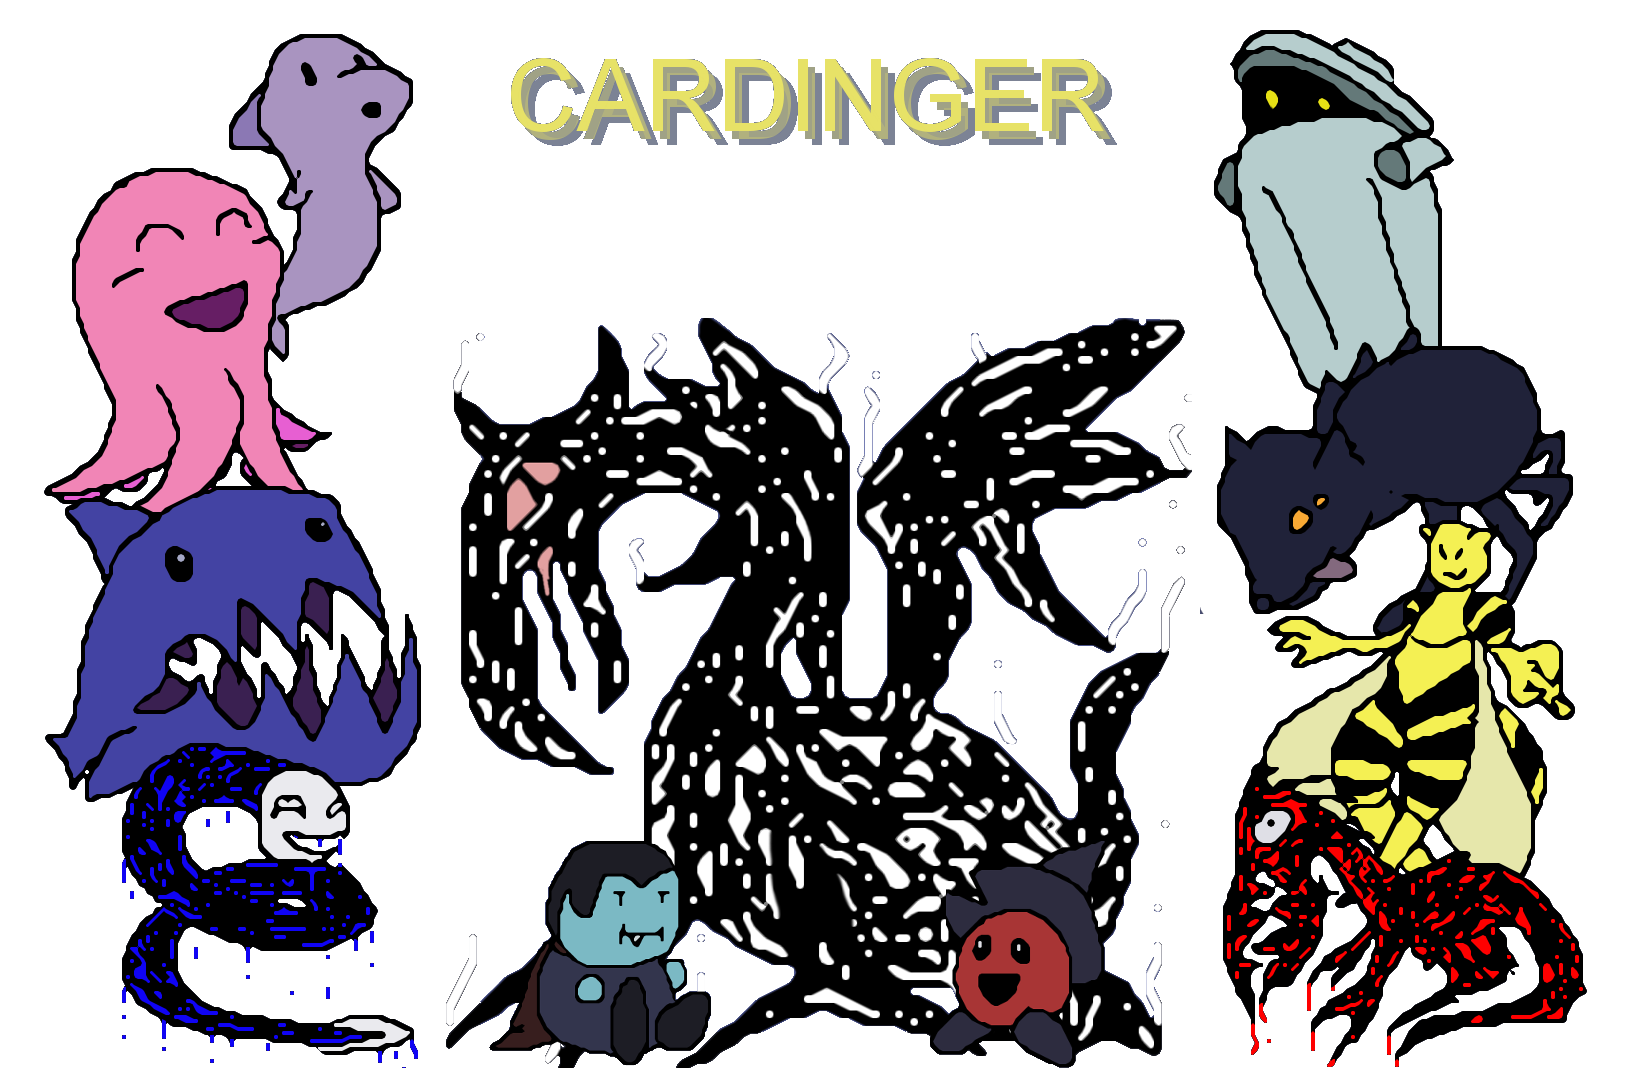 Cardinger